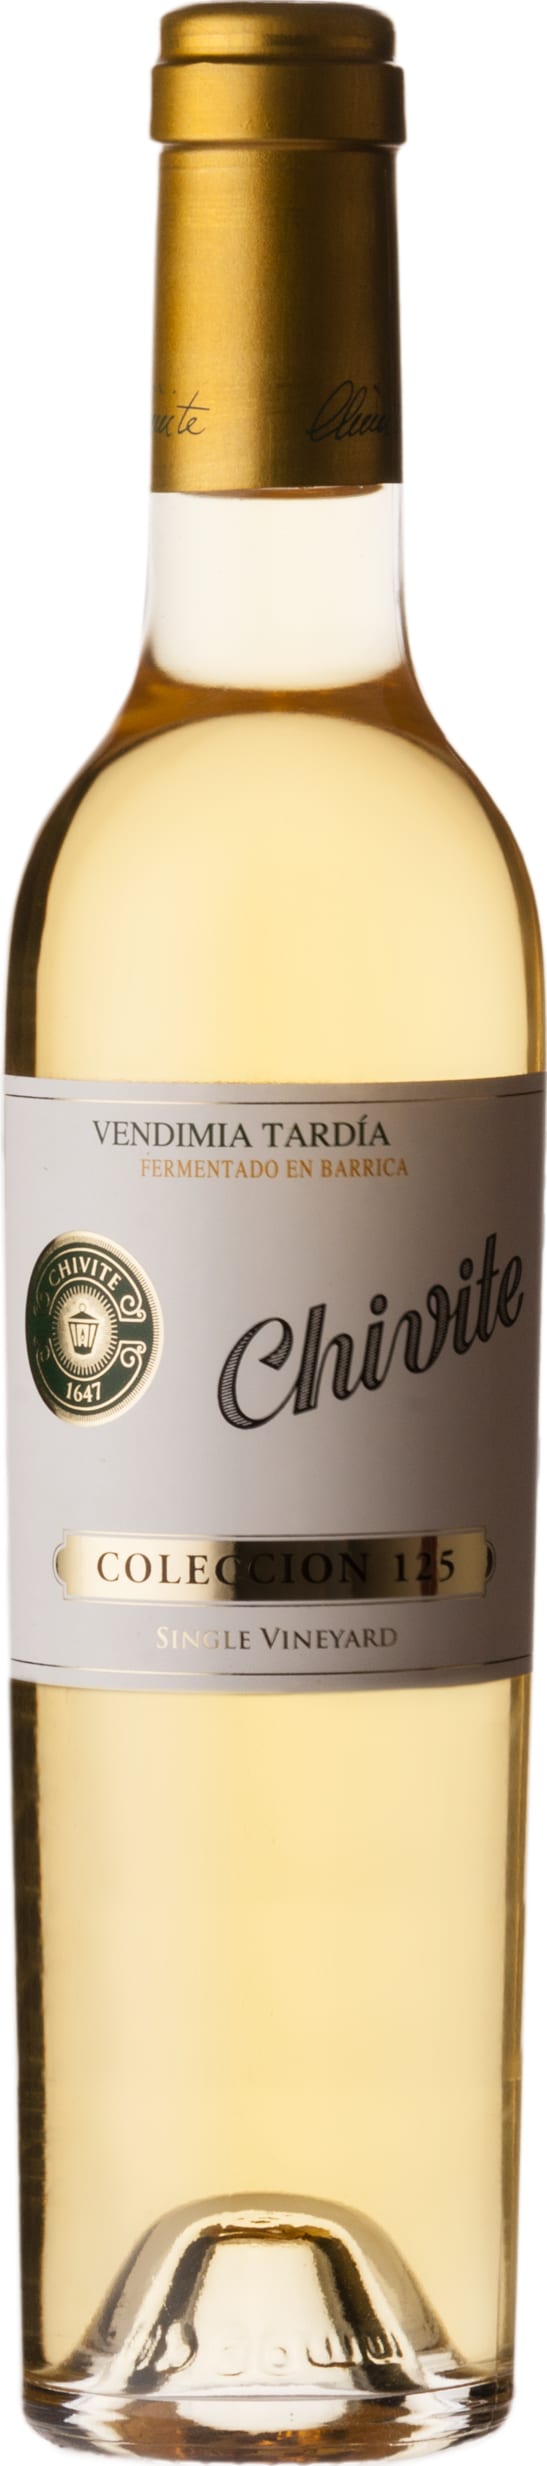 J Chivite Family Estates Coleccion 125 Vendimia Tardia, 375cl 2020 37.5cl - Buy J Chivite Family Estates Wines from GREAT WINES DIRECT wine shop